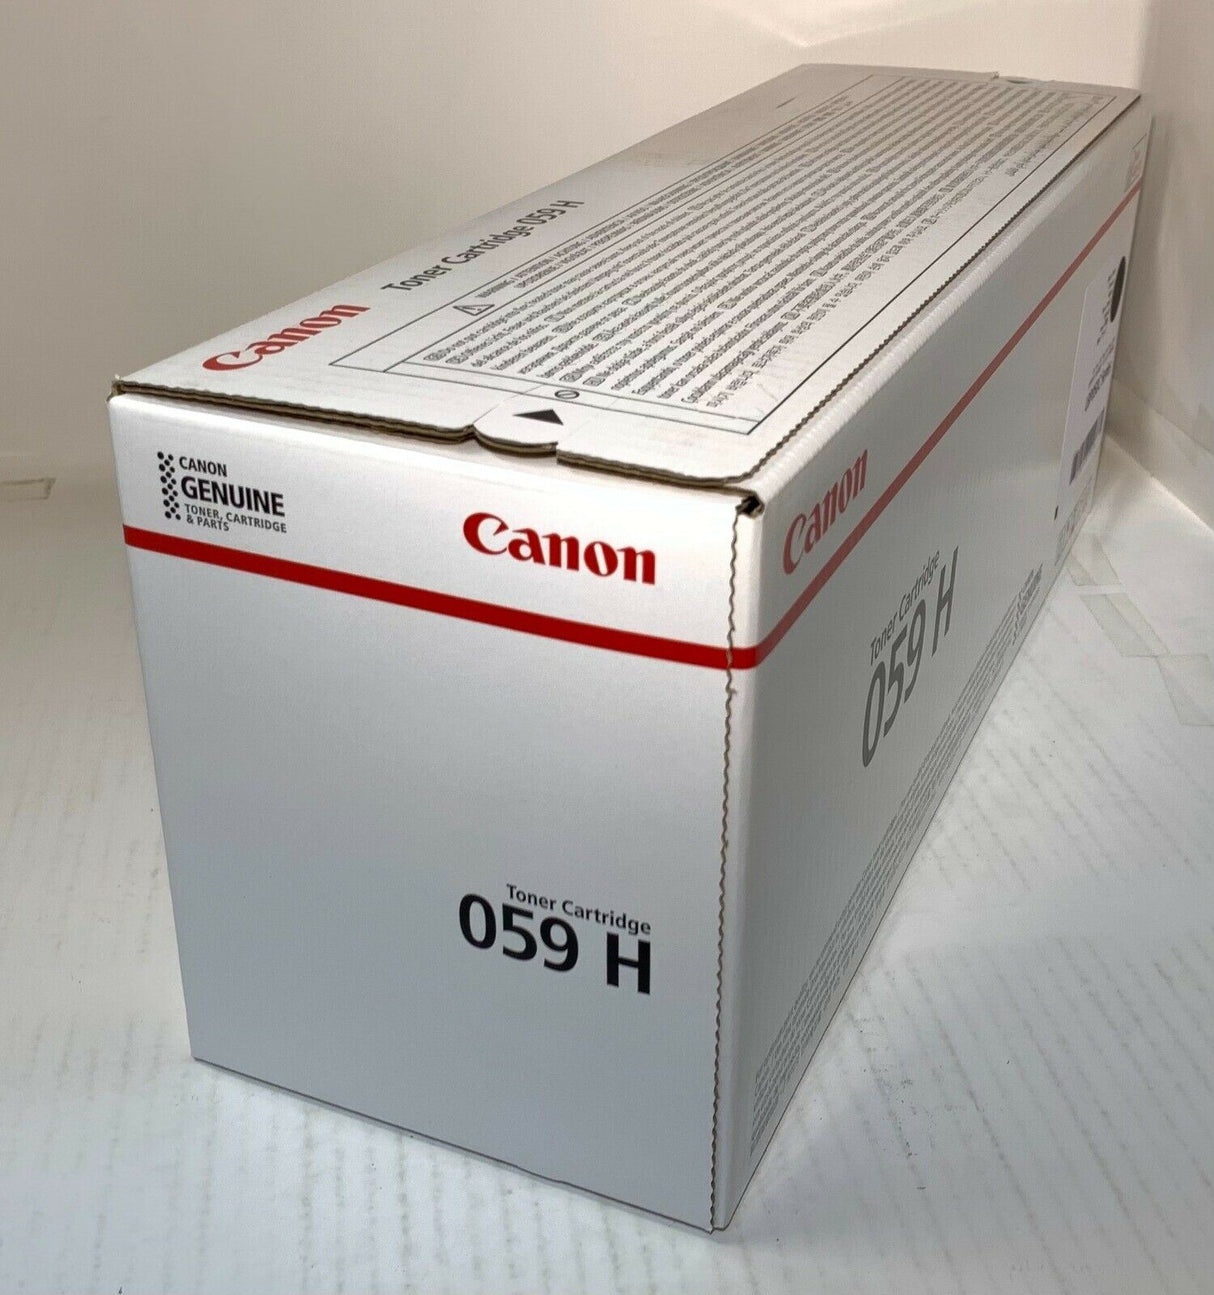 "Originele Canon 059H zwarte toner 3627C001 voor LBP850C-serie NIEUW OVP